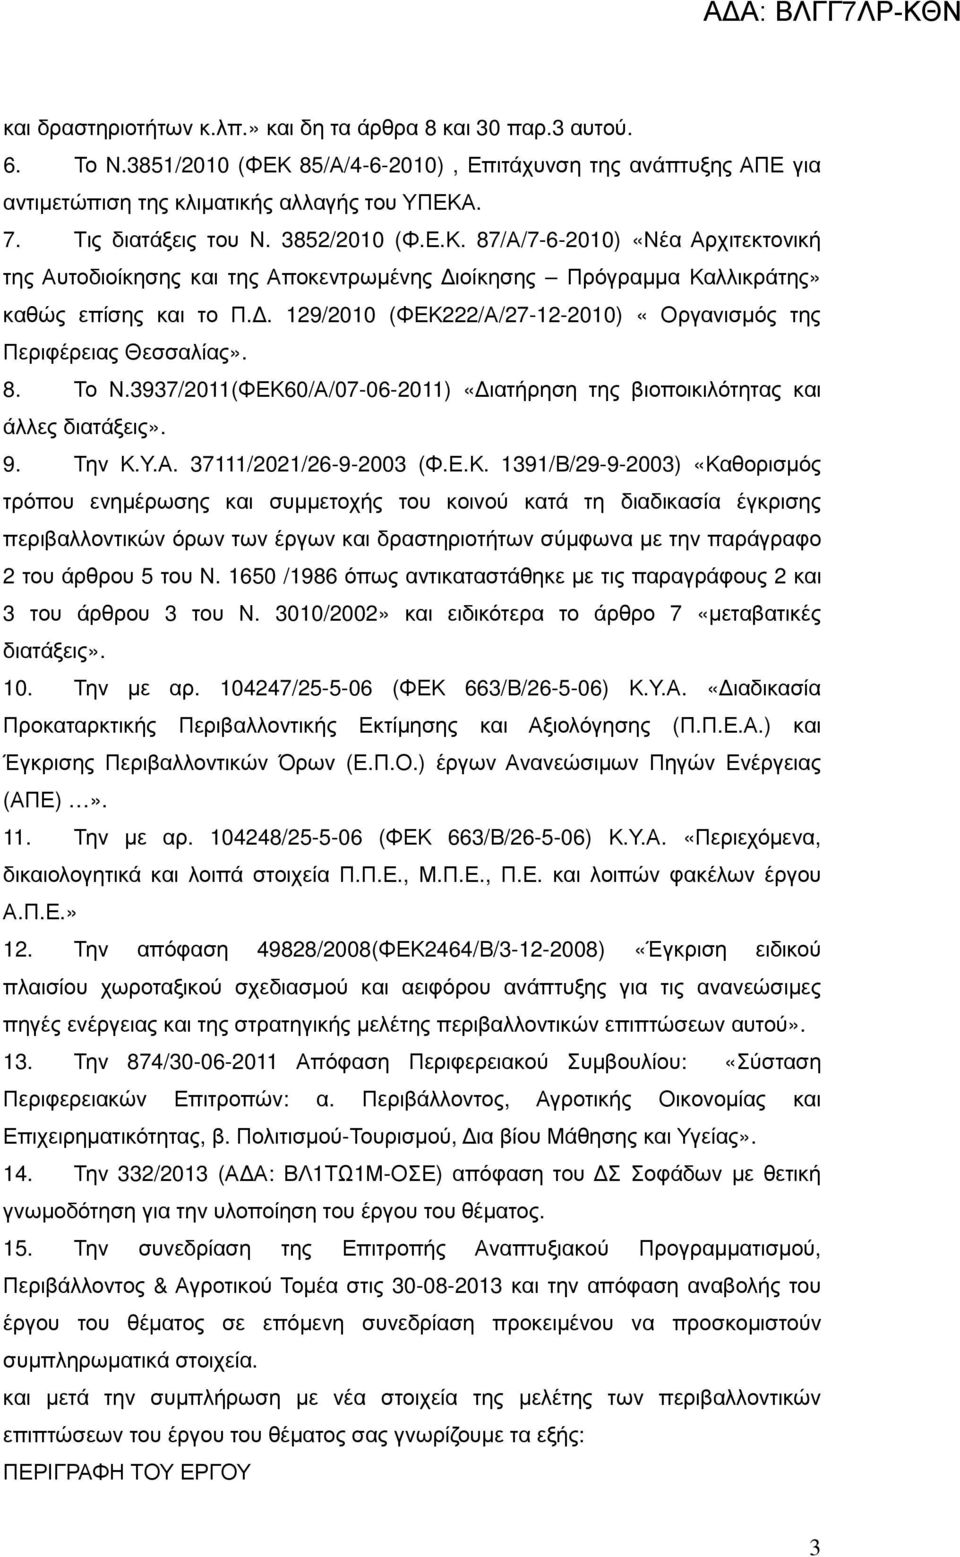 . 129/2010 (ΦΕΚ222/Α/27-12-2010) «Οργανισµός της Περιφέρειας Θεσσαλίας». 8. Το Ν.3937/2011(ΦΕΚ60/Α/07-06-2011) «ιατήρηση της βιοποικιλότητας και άλλες διατάξεις». 9. Την Κ.Υ.Α. 37111/2021/26-9-2003 (Φ.